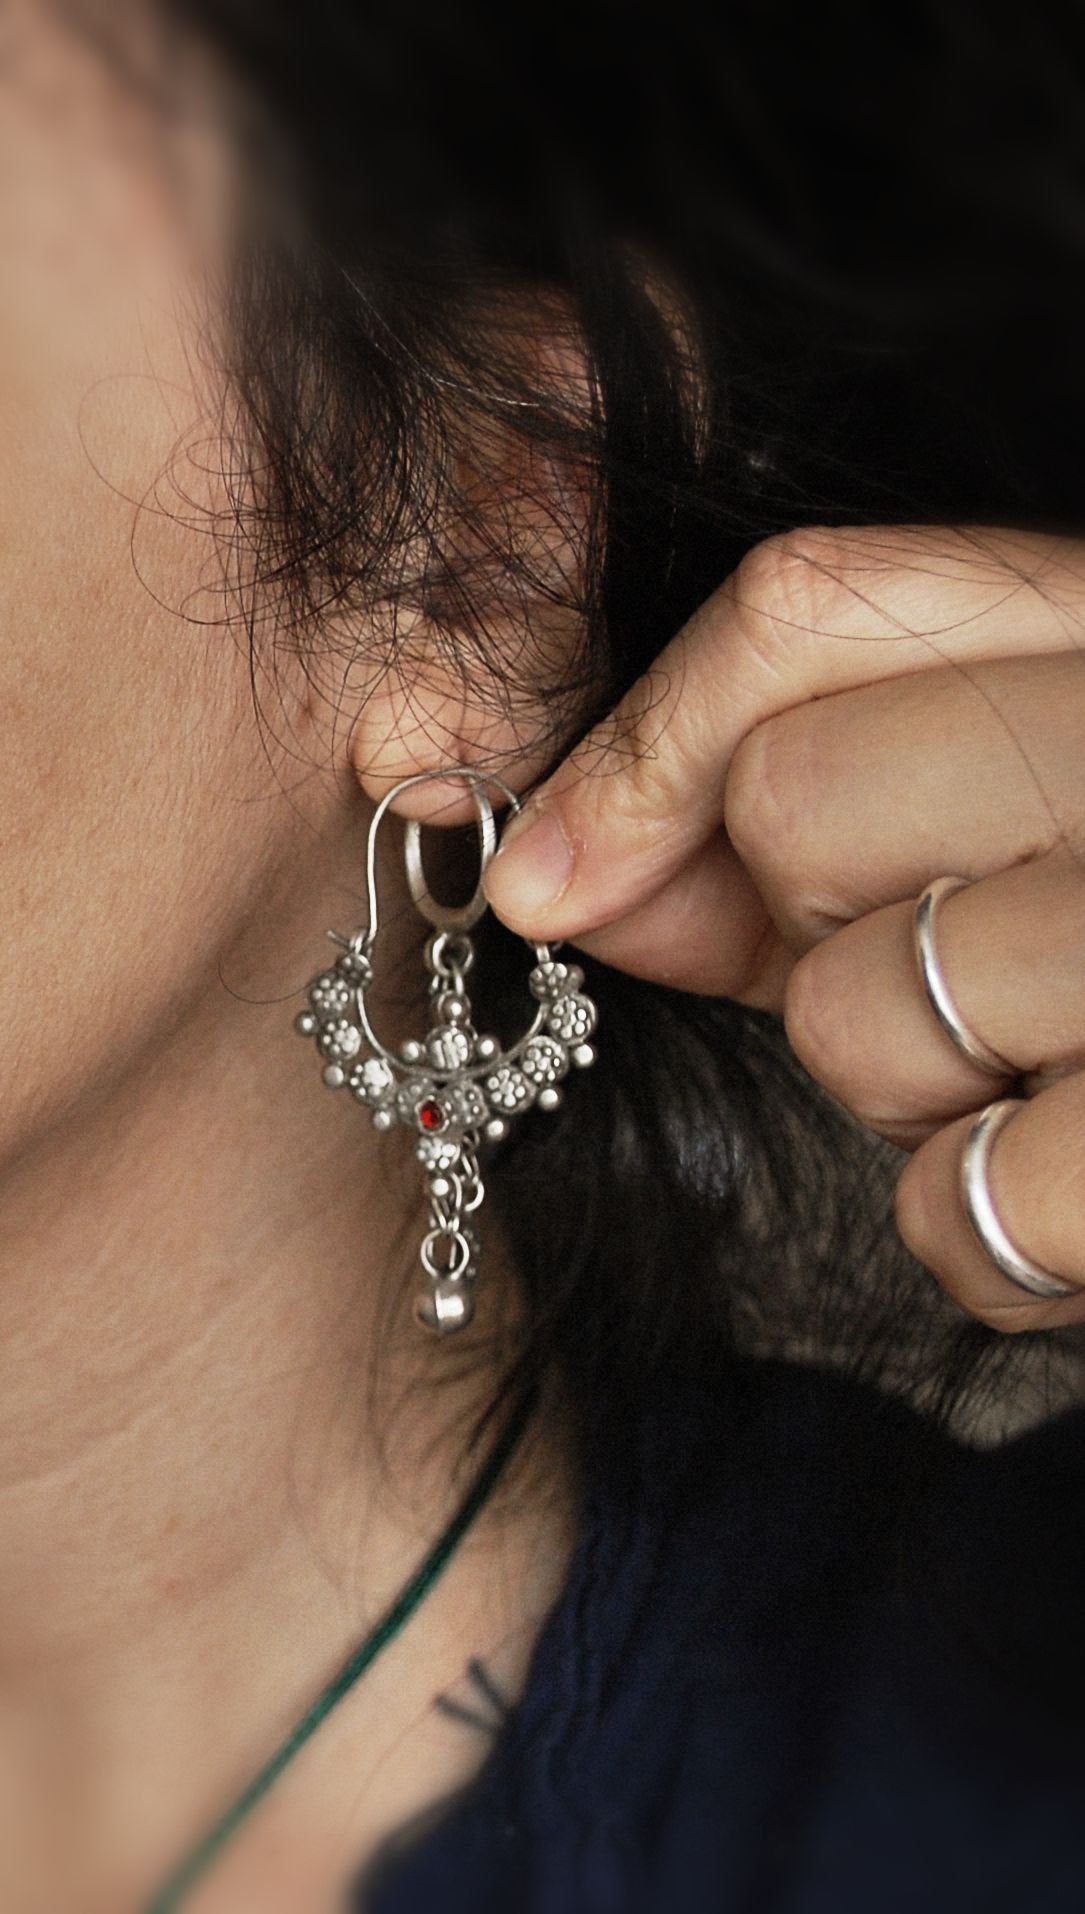 Antique Afghani Earrings - Tribal Hoop Earrings - Afghani Hoop Earrings - Ethnic Hoop Earrings - Afghani Jewelry - Tribal Earrings